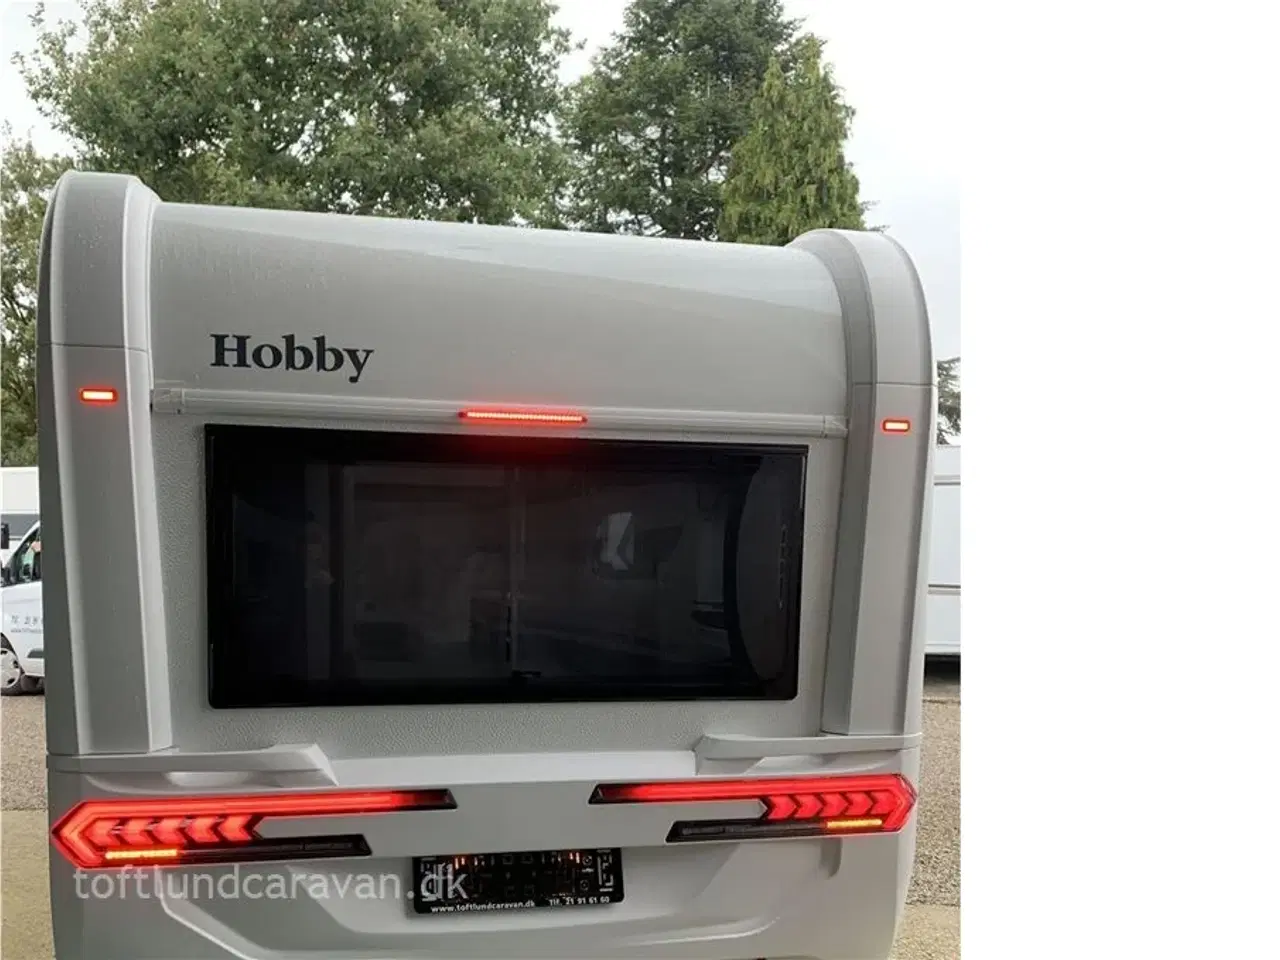 Billede 12 - 2024 - Hobby On Tour 460 DL   Sønderjyllands aut. HOBBY forhandler. NY 2024 ENKELTSENGE m/lameludtræk. NU PÅ LAGER TIL OMGÅENDE LEVERING.